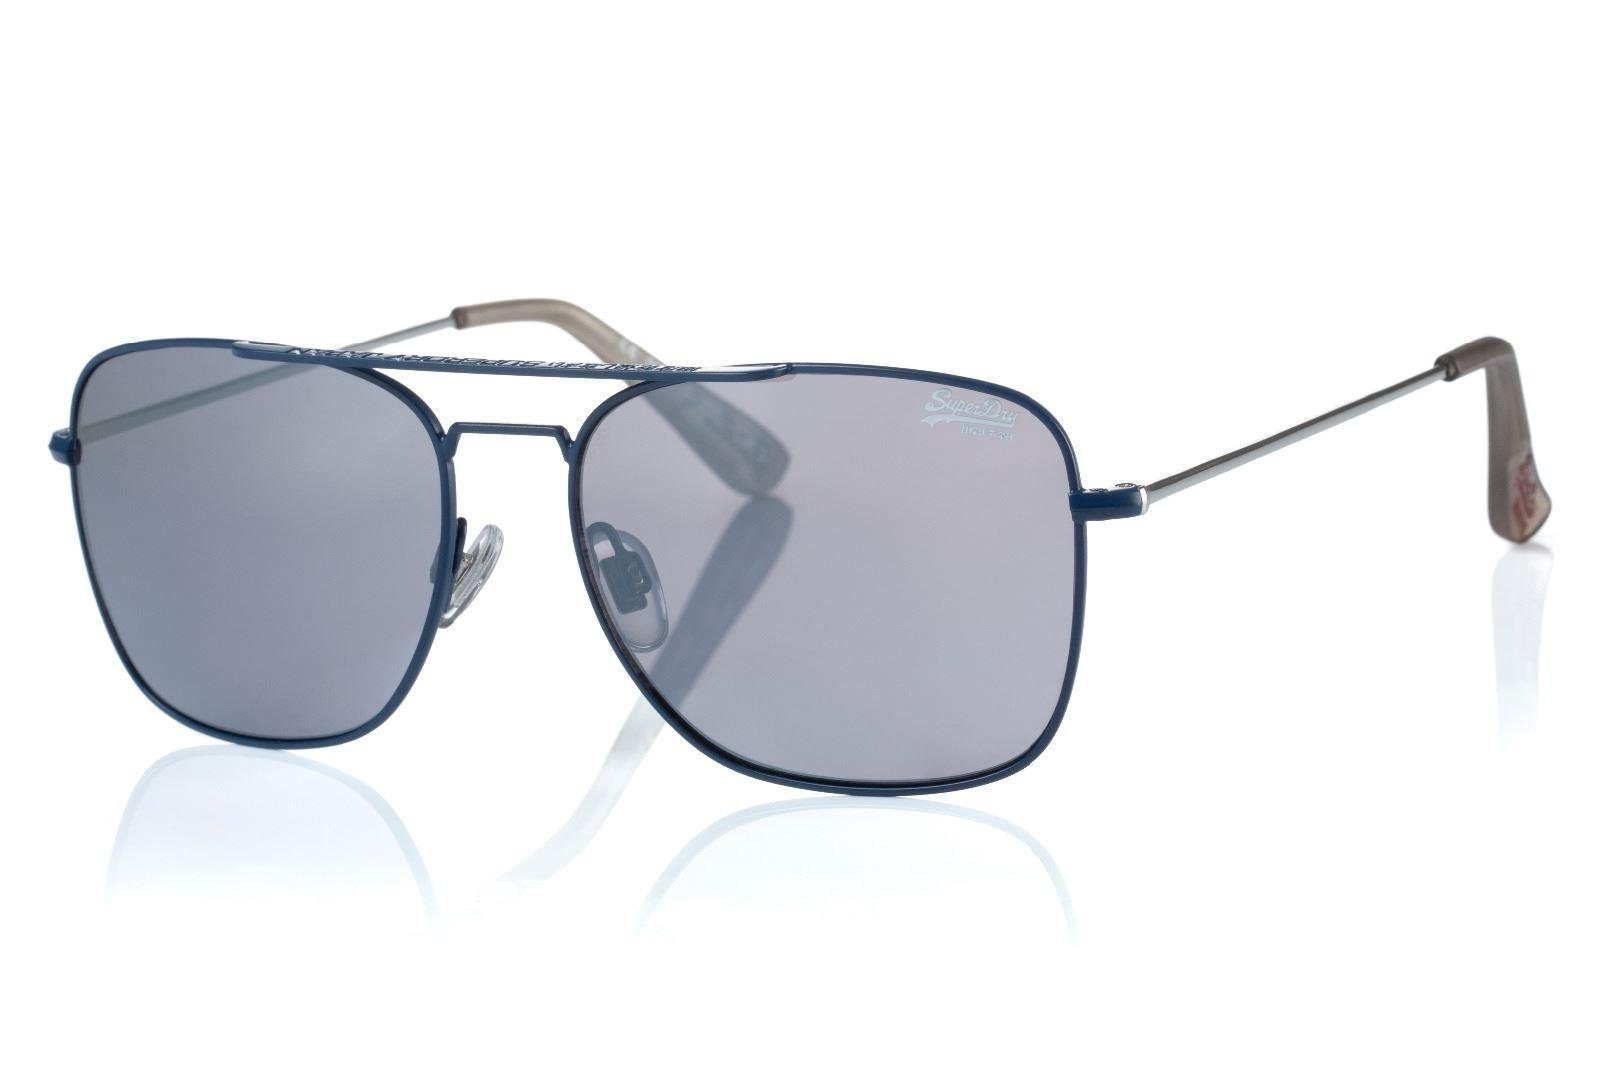 Superdry Sonnenbrille Trident 212 Kunststoff und Metall, Kategorie 3, 56-16/150